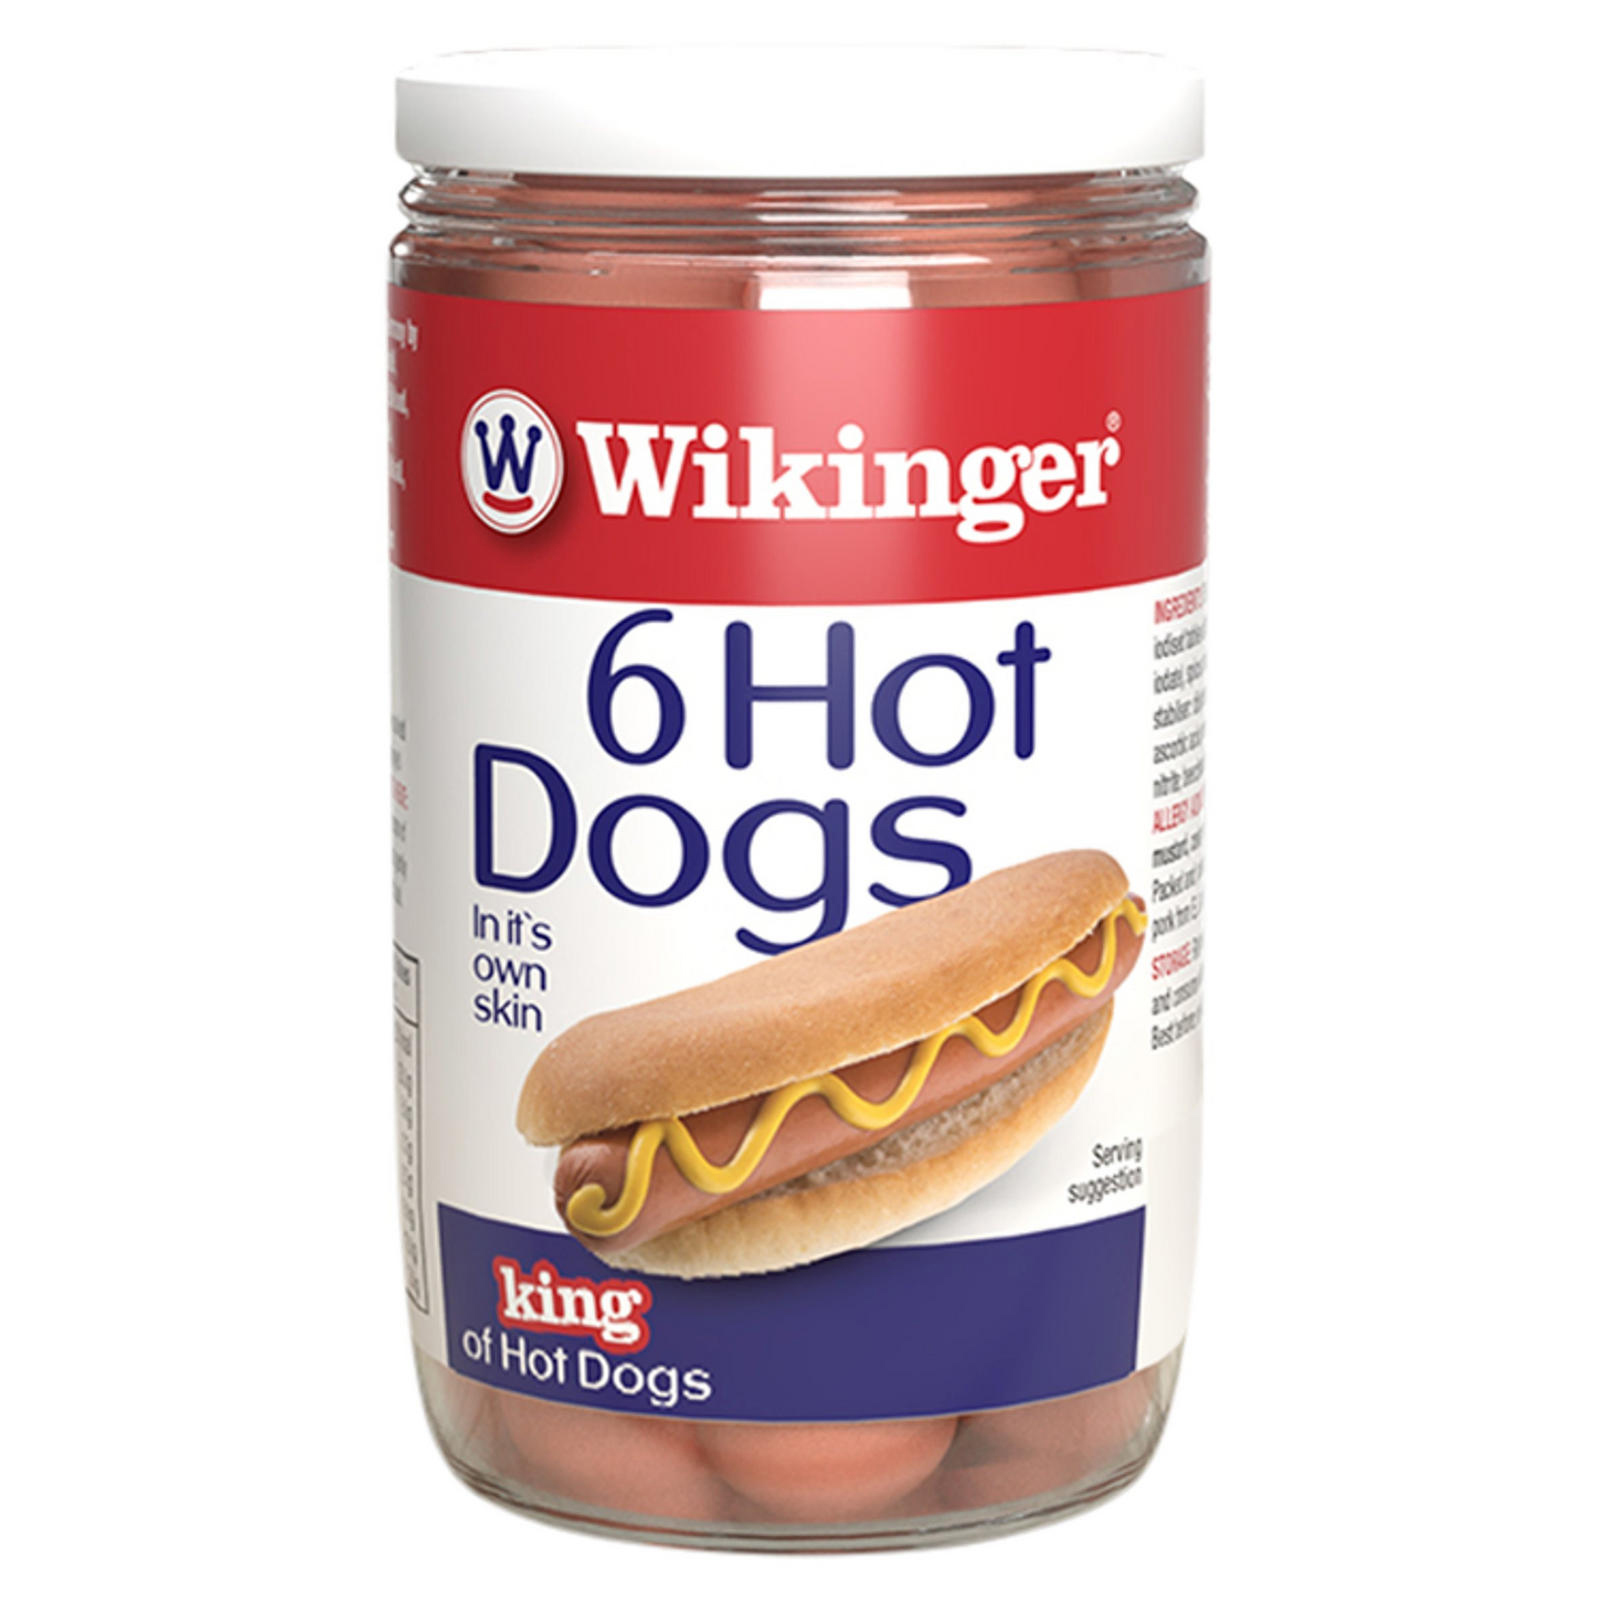 Schnappen Sie sich Wikinger-Hotdogs aus Island, normalerweise 1,25 £, im Drei-für-3-£-Angebot, um sich auf eine Lagerfeuerparty vorzubereiten